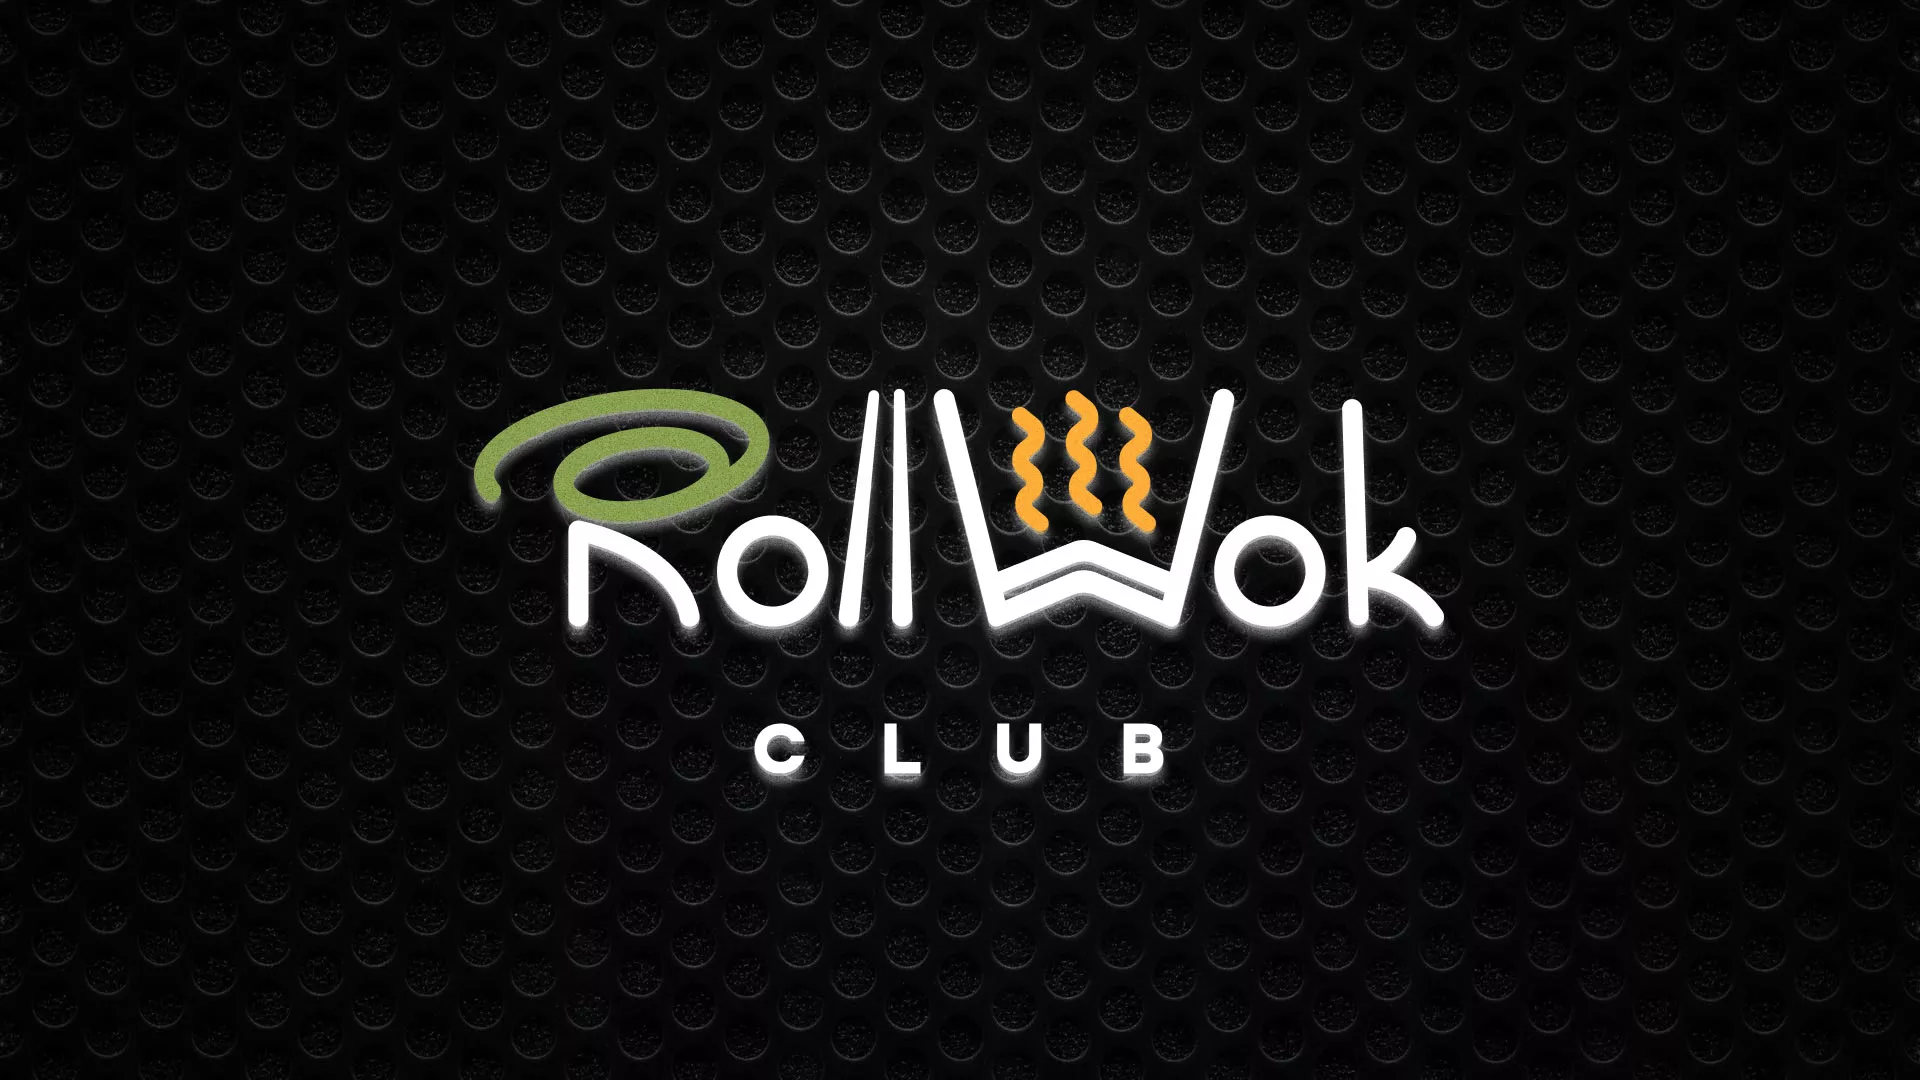 Брендирование торговых точек суши-бара «Roll Wok Club» в Киржаче